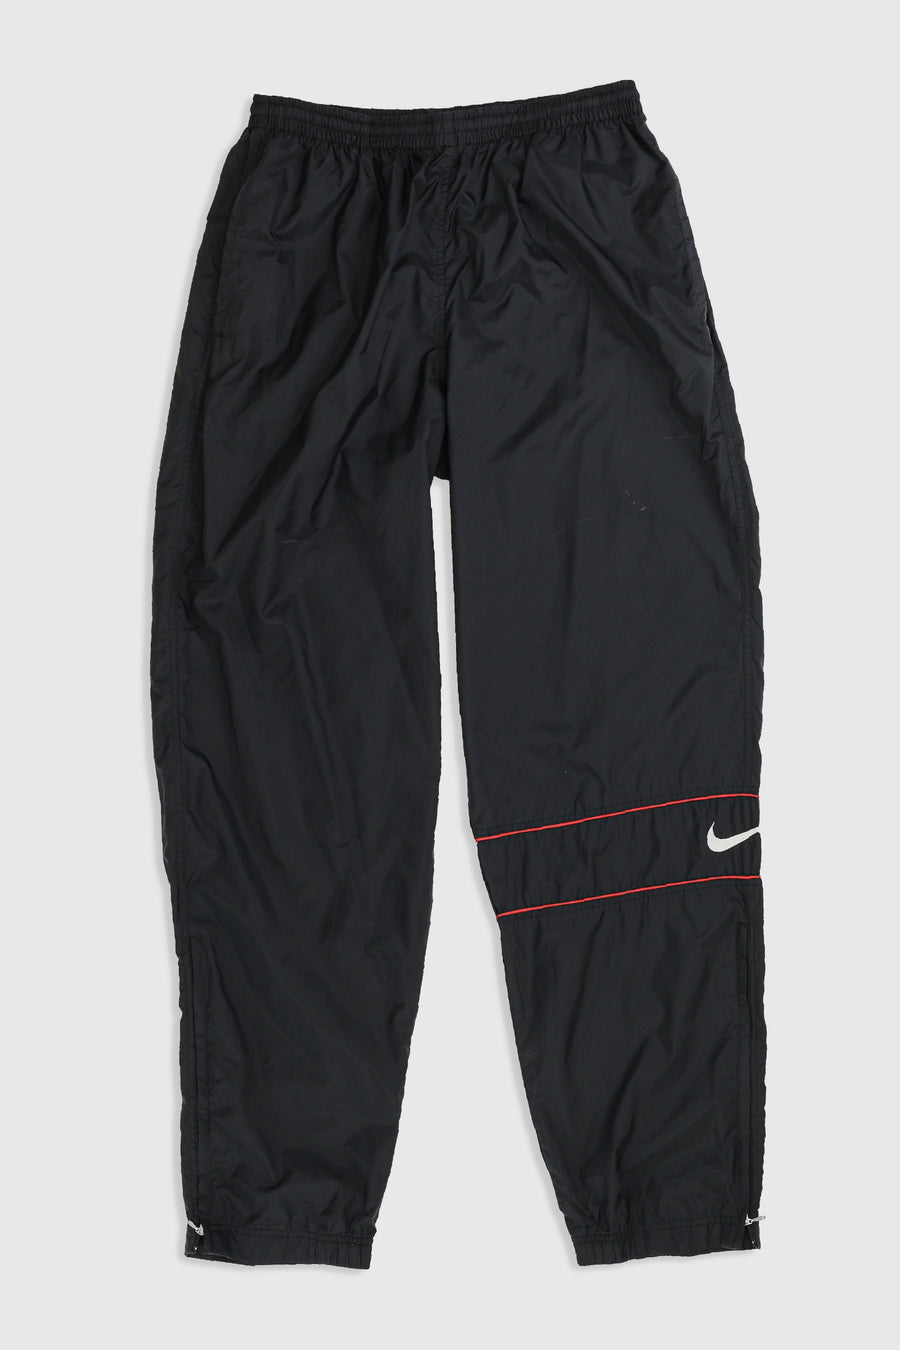 Vintage Nike Windbreaker Pants